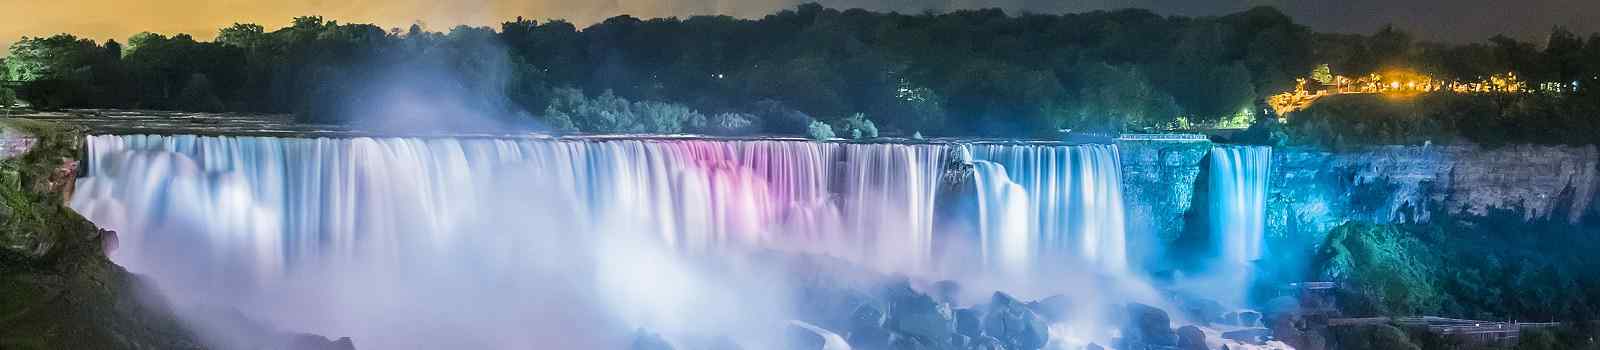 EAST-EXPRESS  Niagarafaelle farbenfroh beleuchtet in der Nacht 218469484